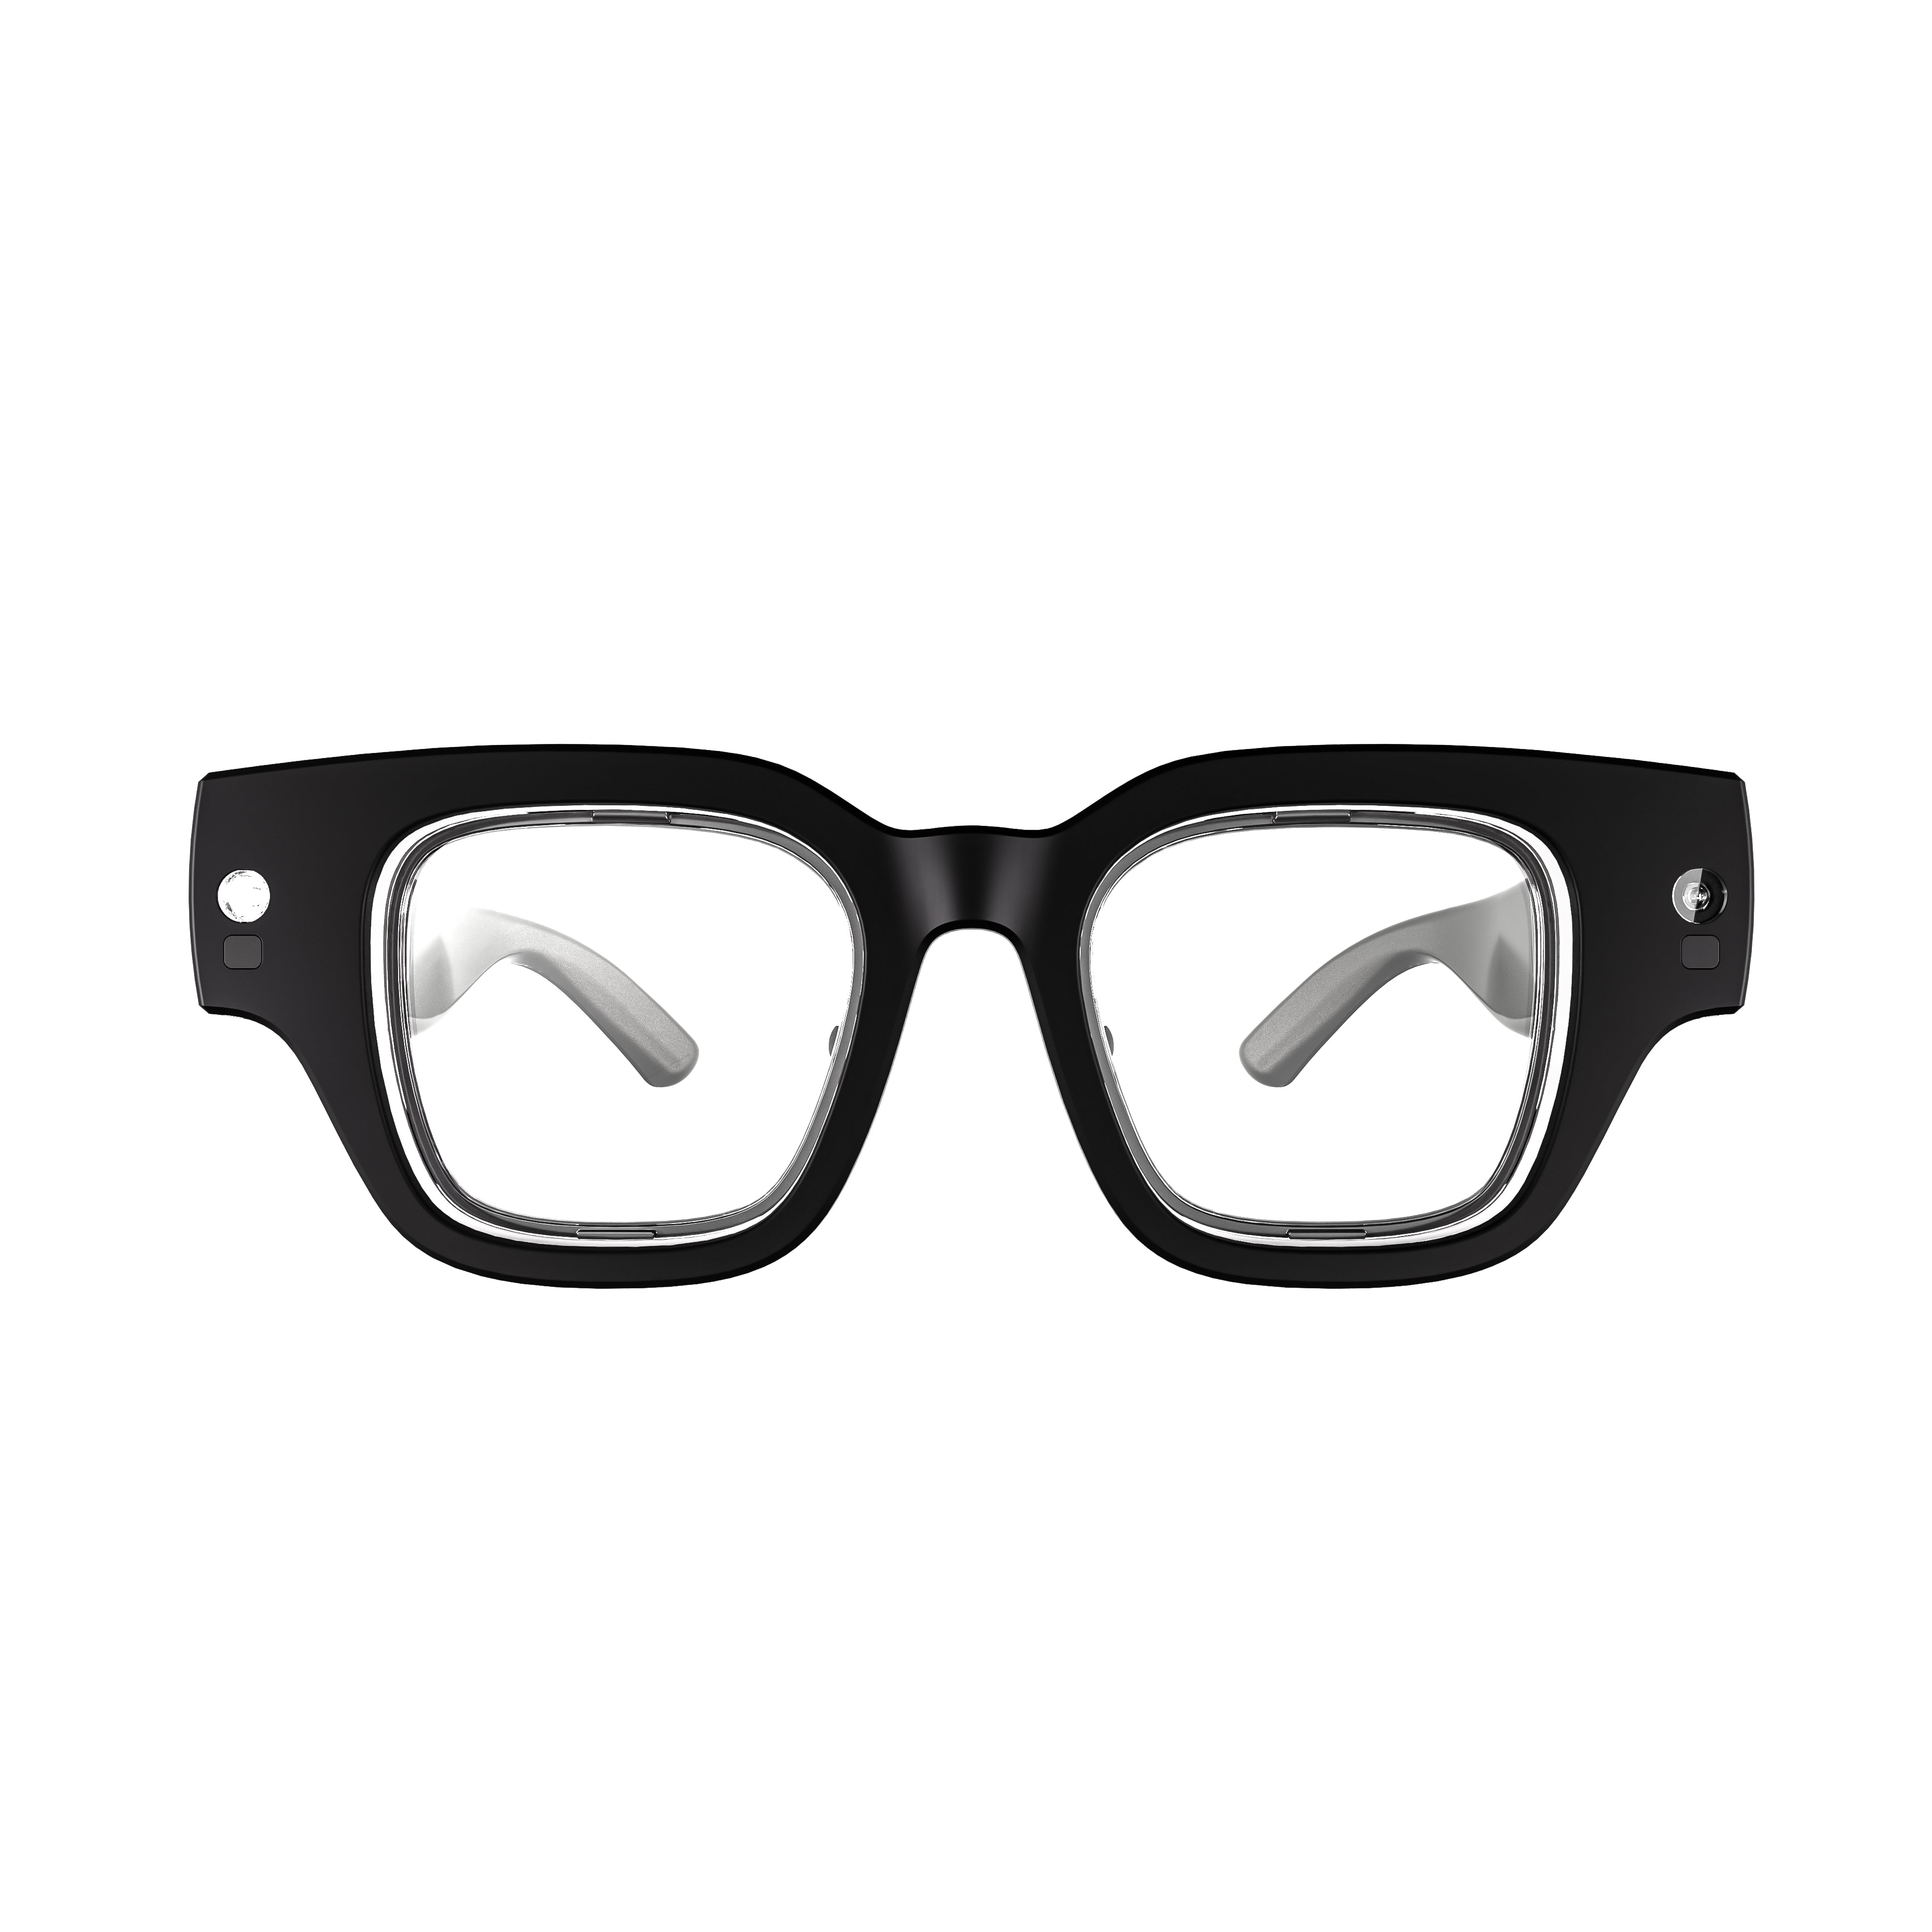 INMO Air2 AR Glasses - INMO AR